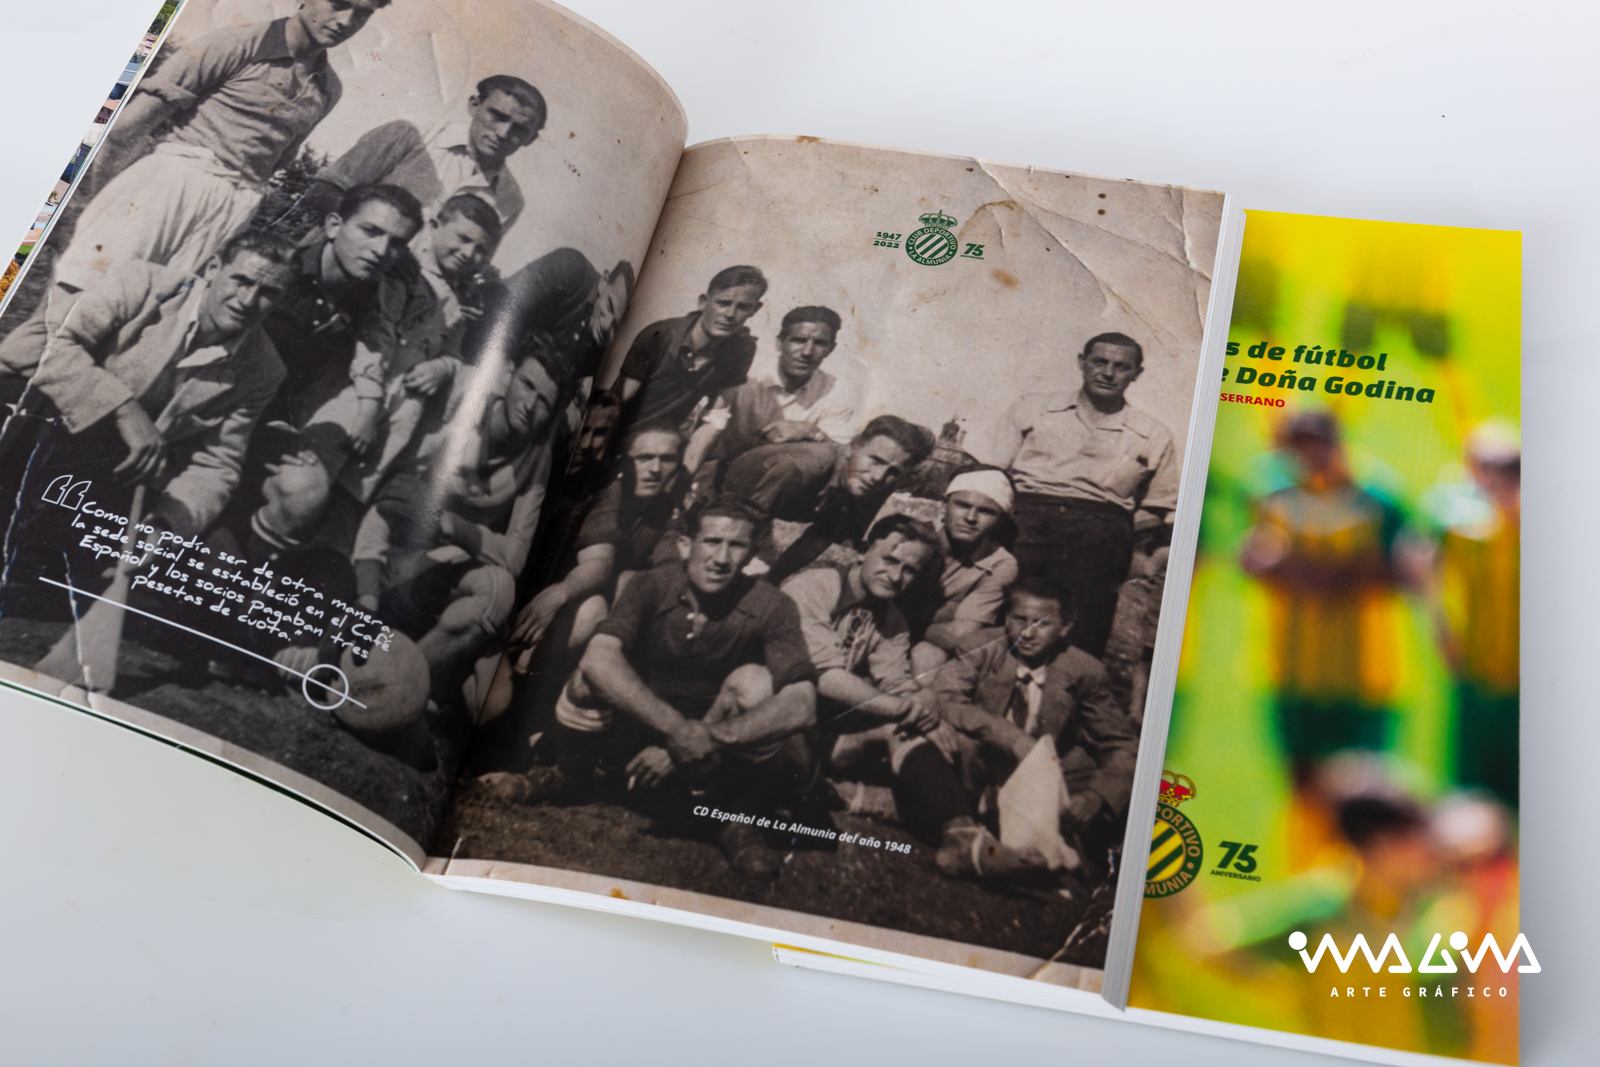 Libro 75 años y más de fútbol en La Almunia de Doña Godina - José Luis García Serrano - Imagina Arte Gráfico